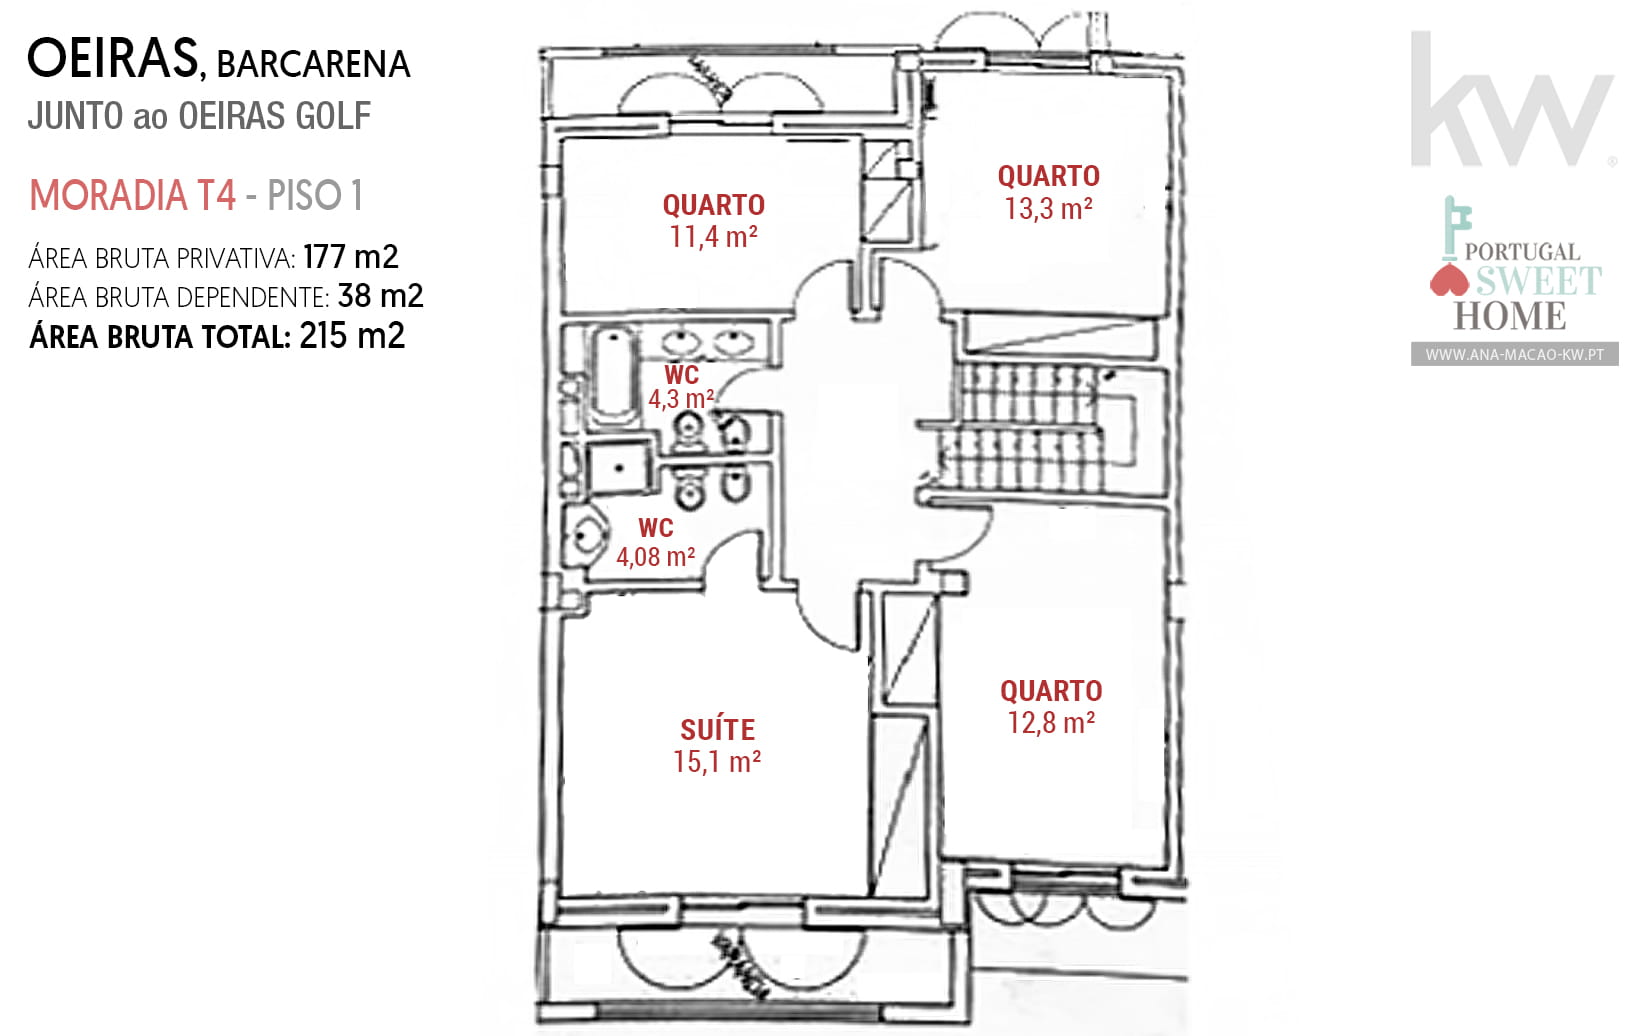 Plan de l'appartement - 1er étage